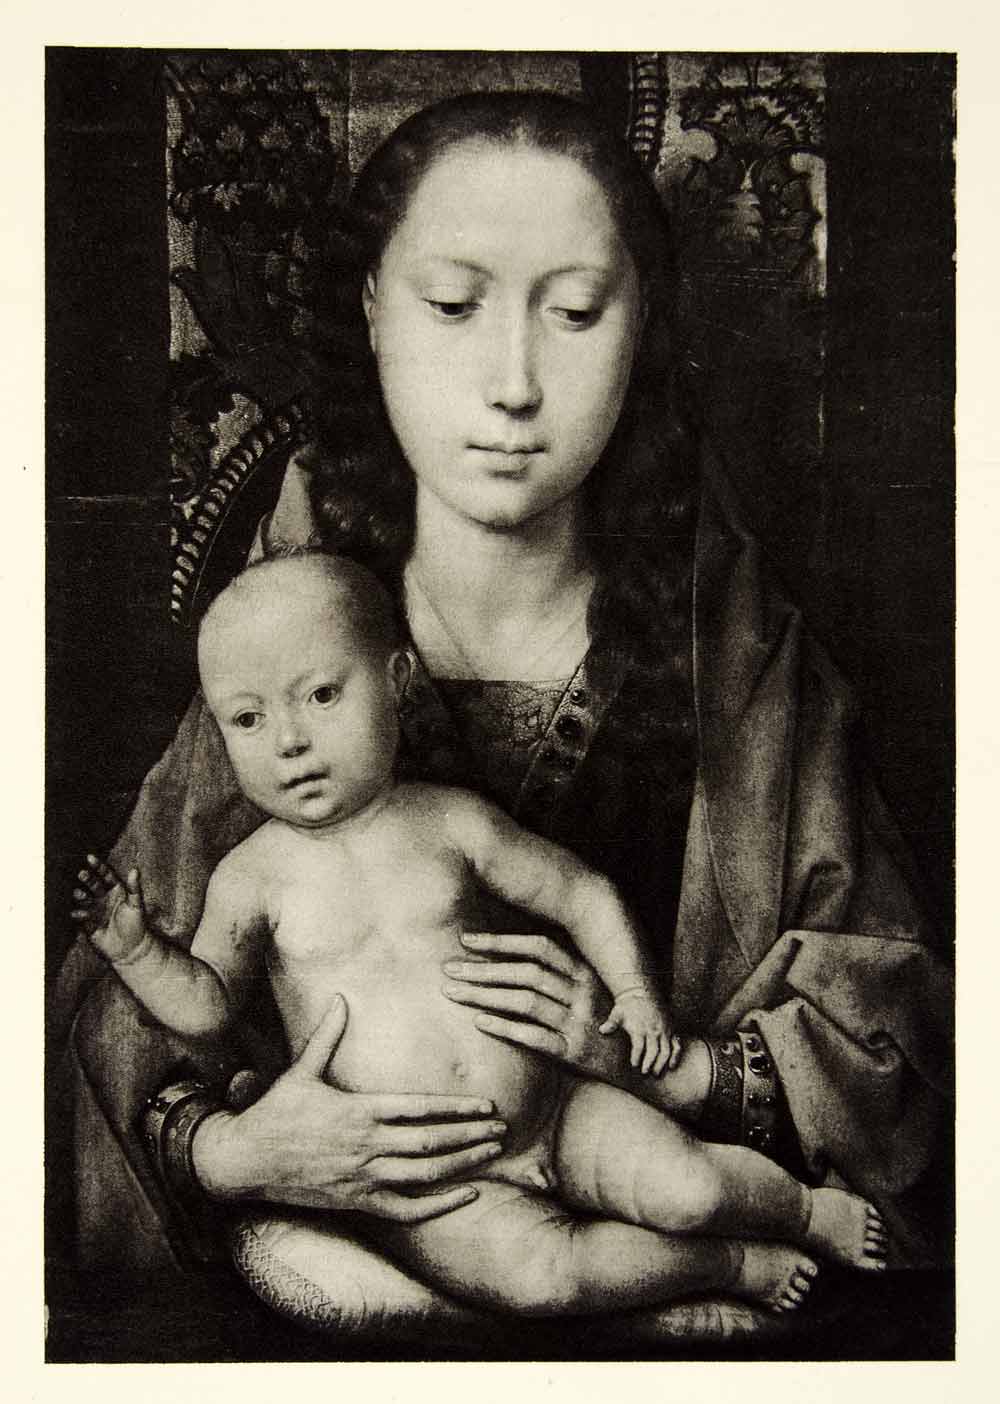 1951 Rotogravure Virgin Mary baby Jesus Holy Religious Christian Child XAHA9